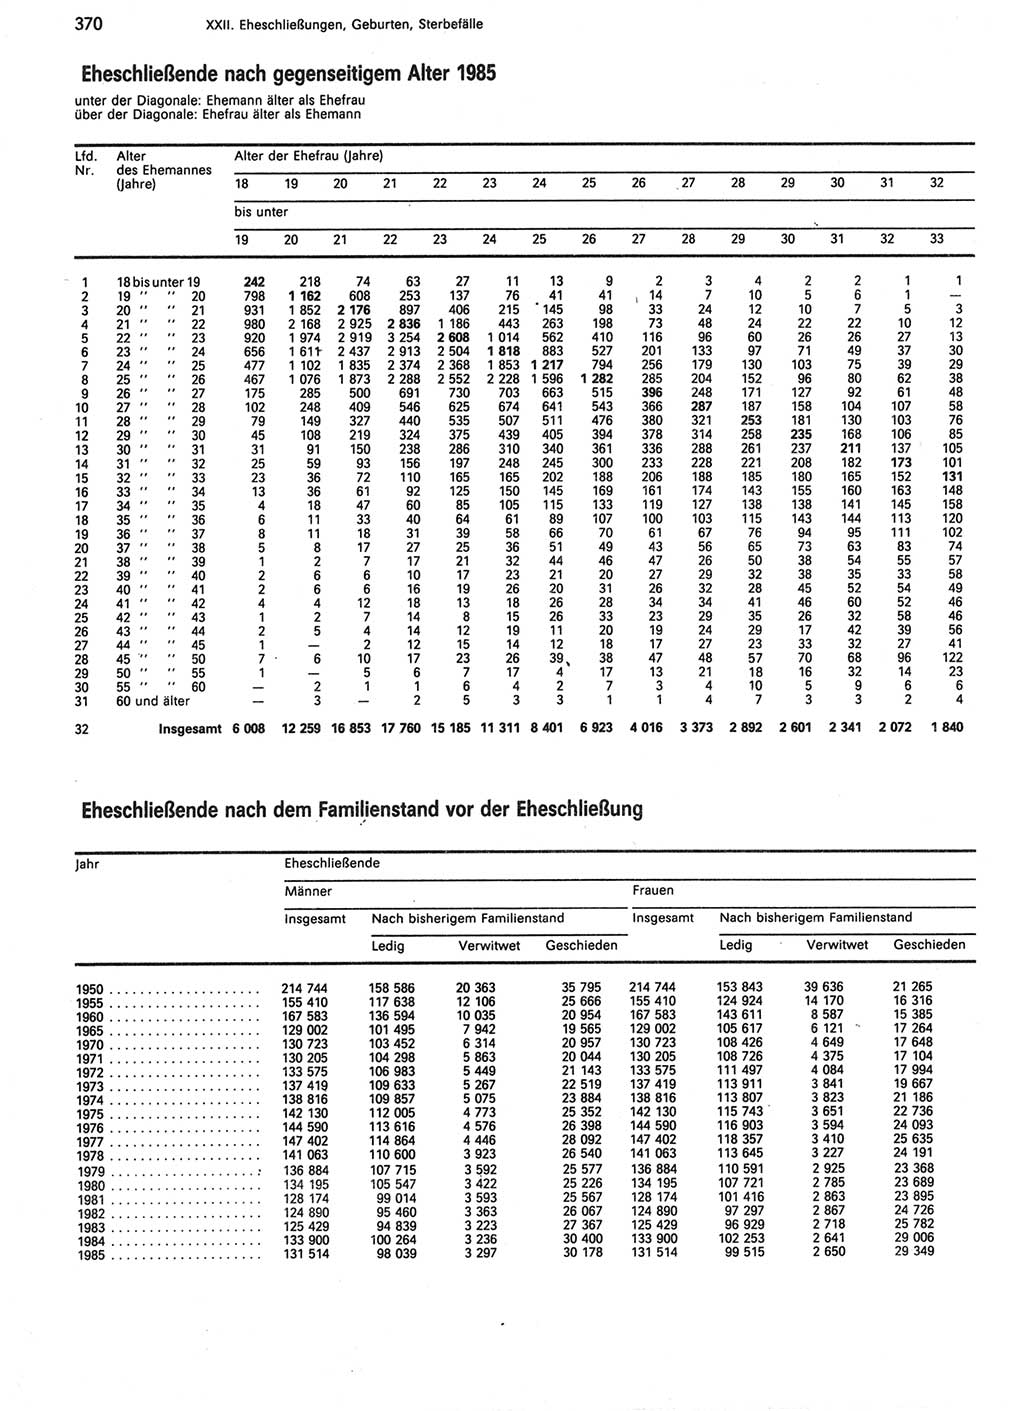 Statistisches Jahrbuch der Deutschen Demokratischen Republik (DDR) 1987, Seite 370 (Stat. Jb. DDR 1987, S. 370)